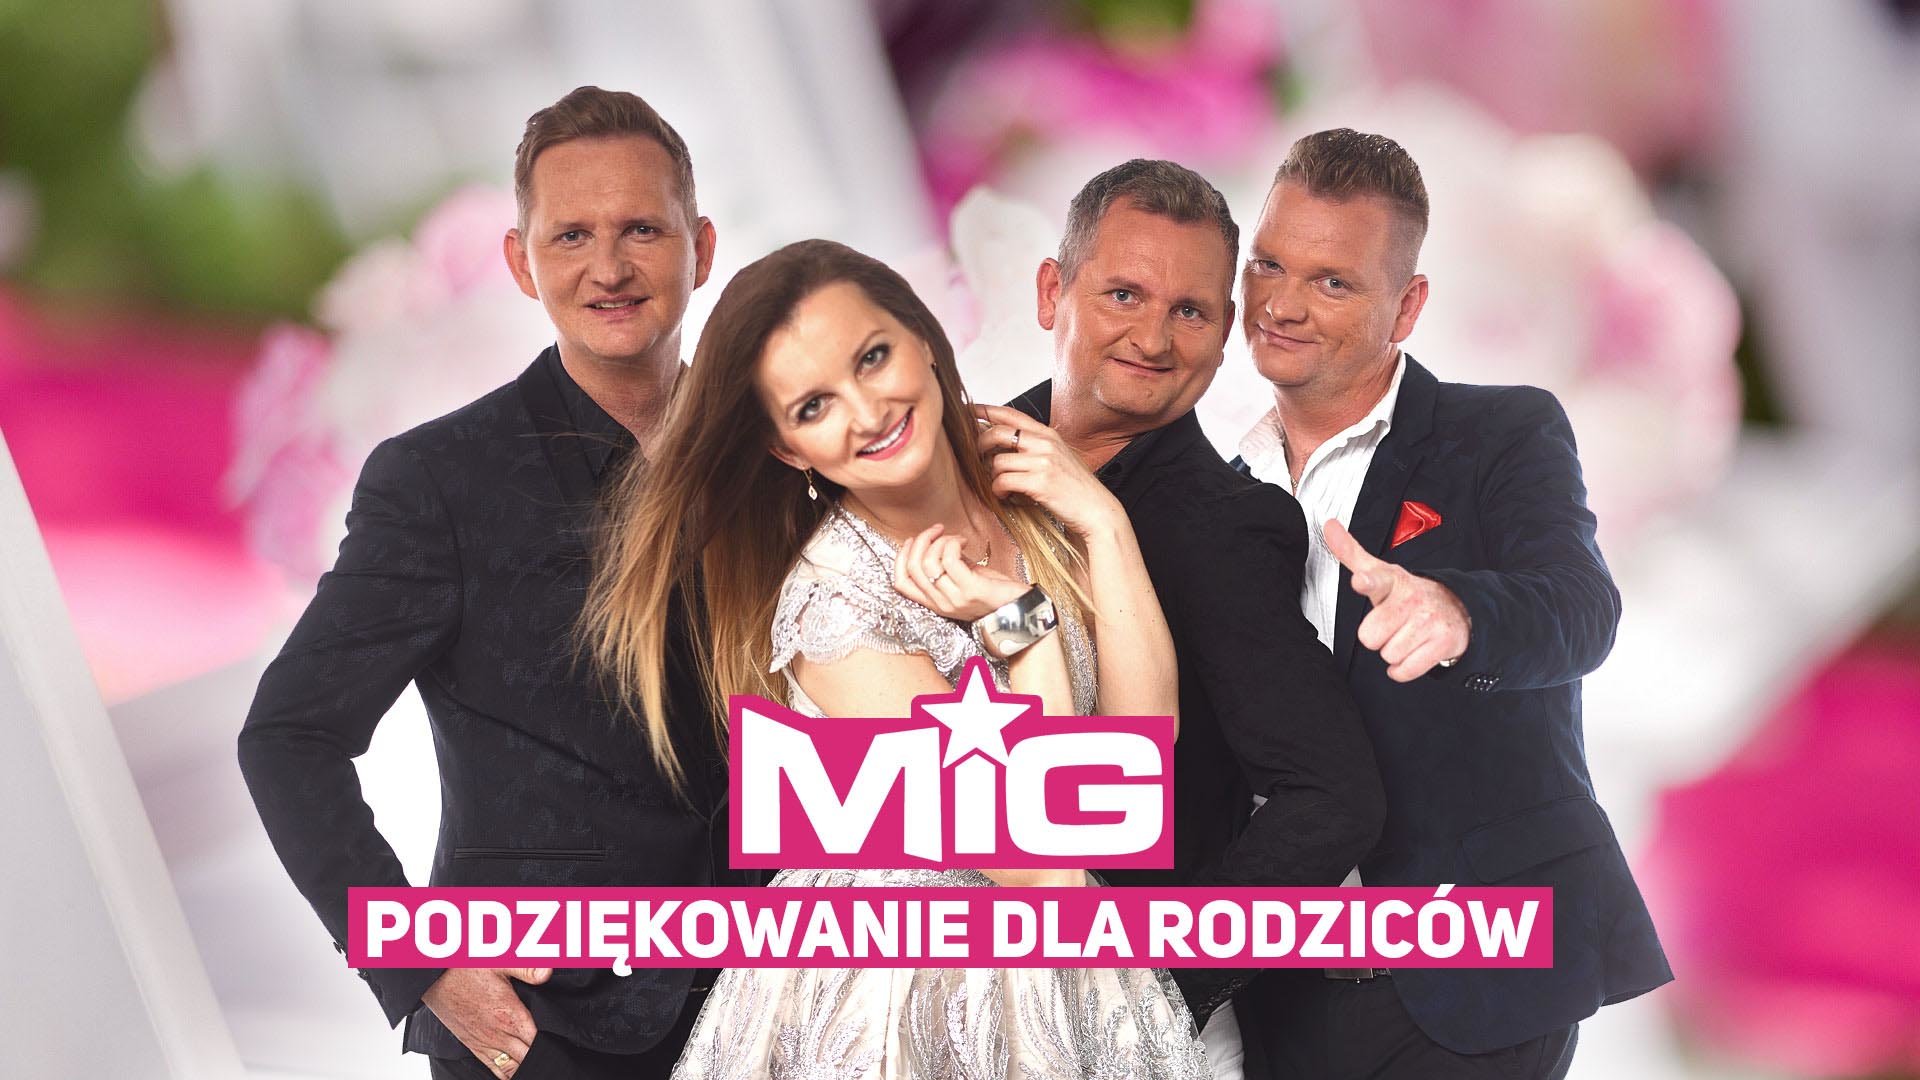 Przepiękna weselna premiera zespołu Mig! | Nowość trafiła do sieci